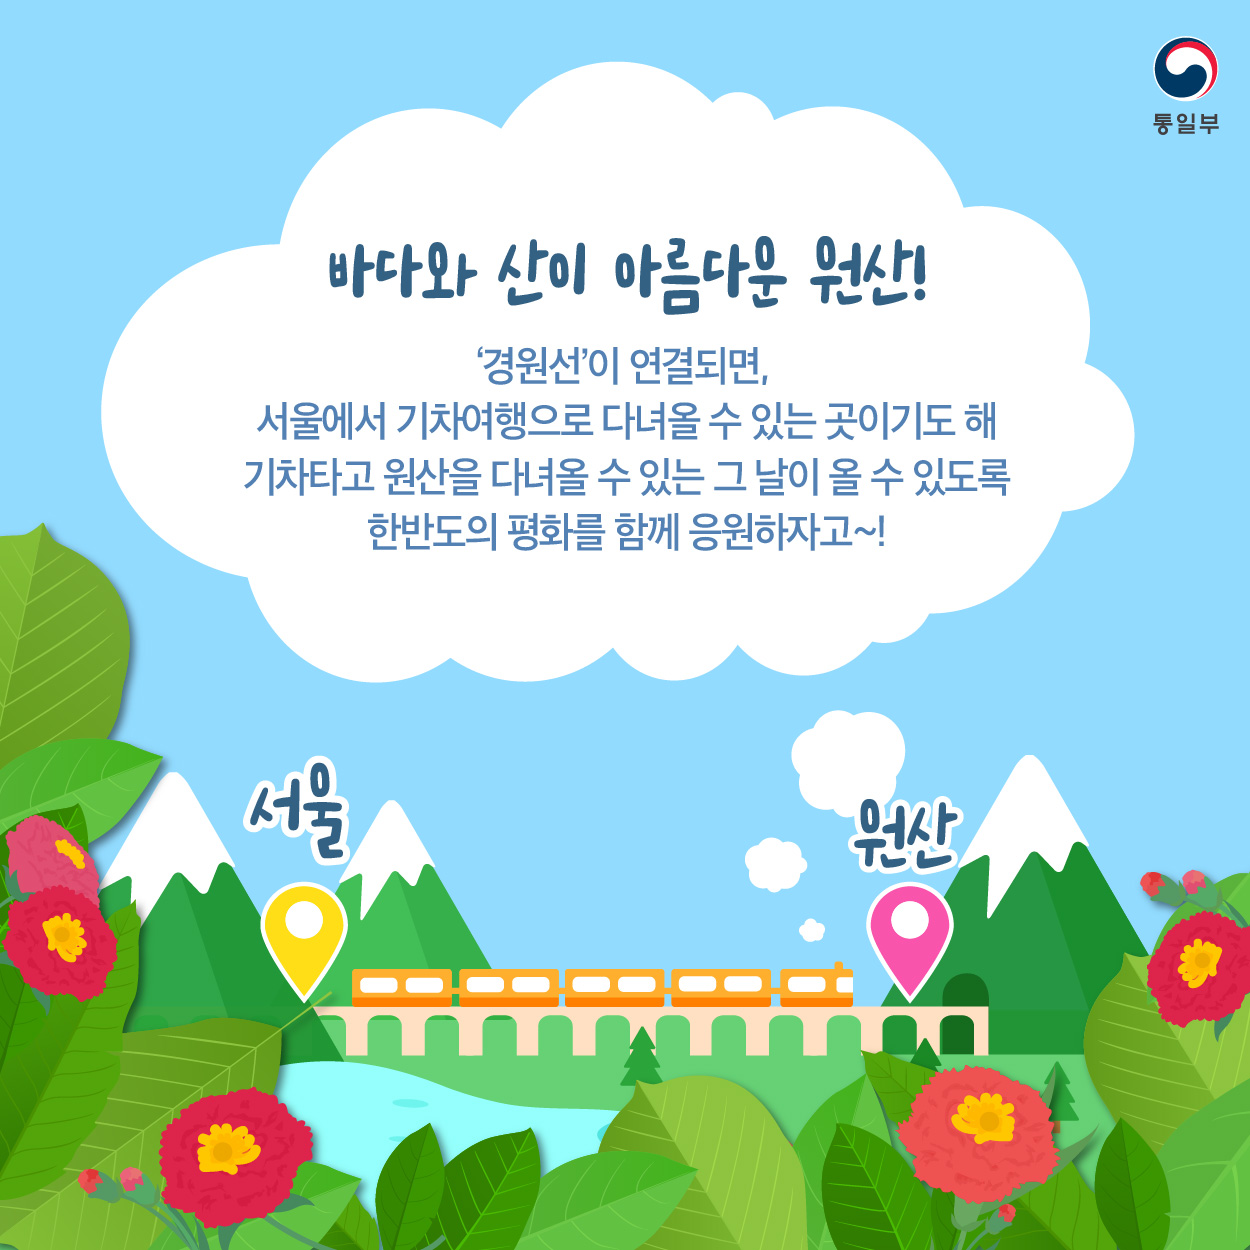 바다와 산이 아름다운 원산~!
'경원선'이 연결되면,
서울에서 기차여행으로 다녀올 수 있는 곳이기도 해.
기차타고 원산을 다녀올 수 있는 그날이 올 수 있도록
한반도의 평화를 함께 응원하자고~!